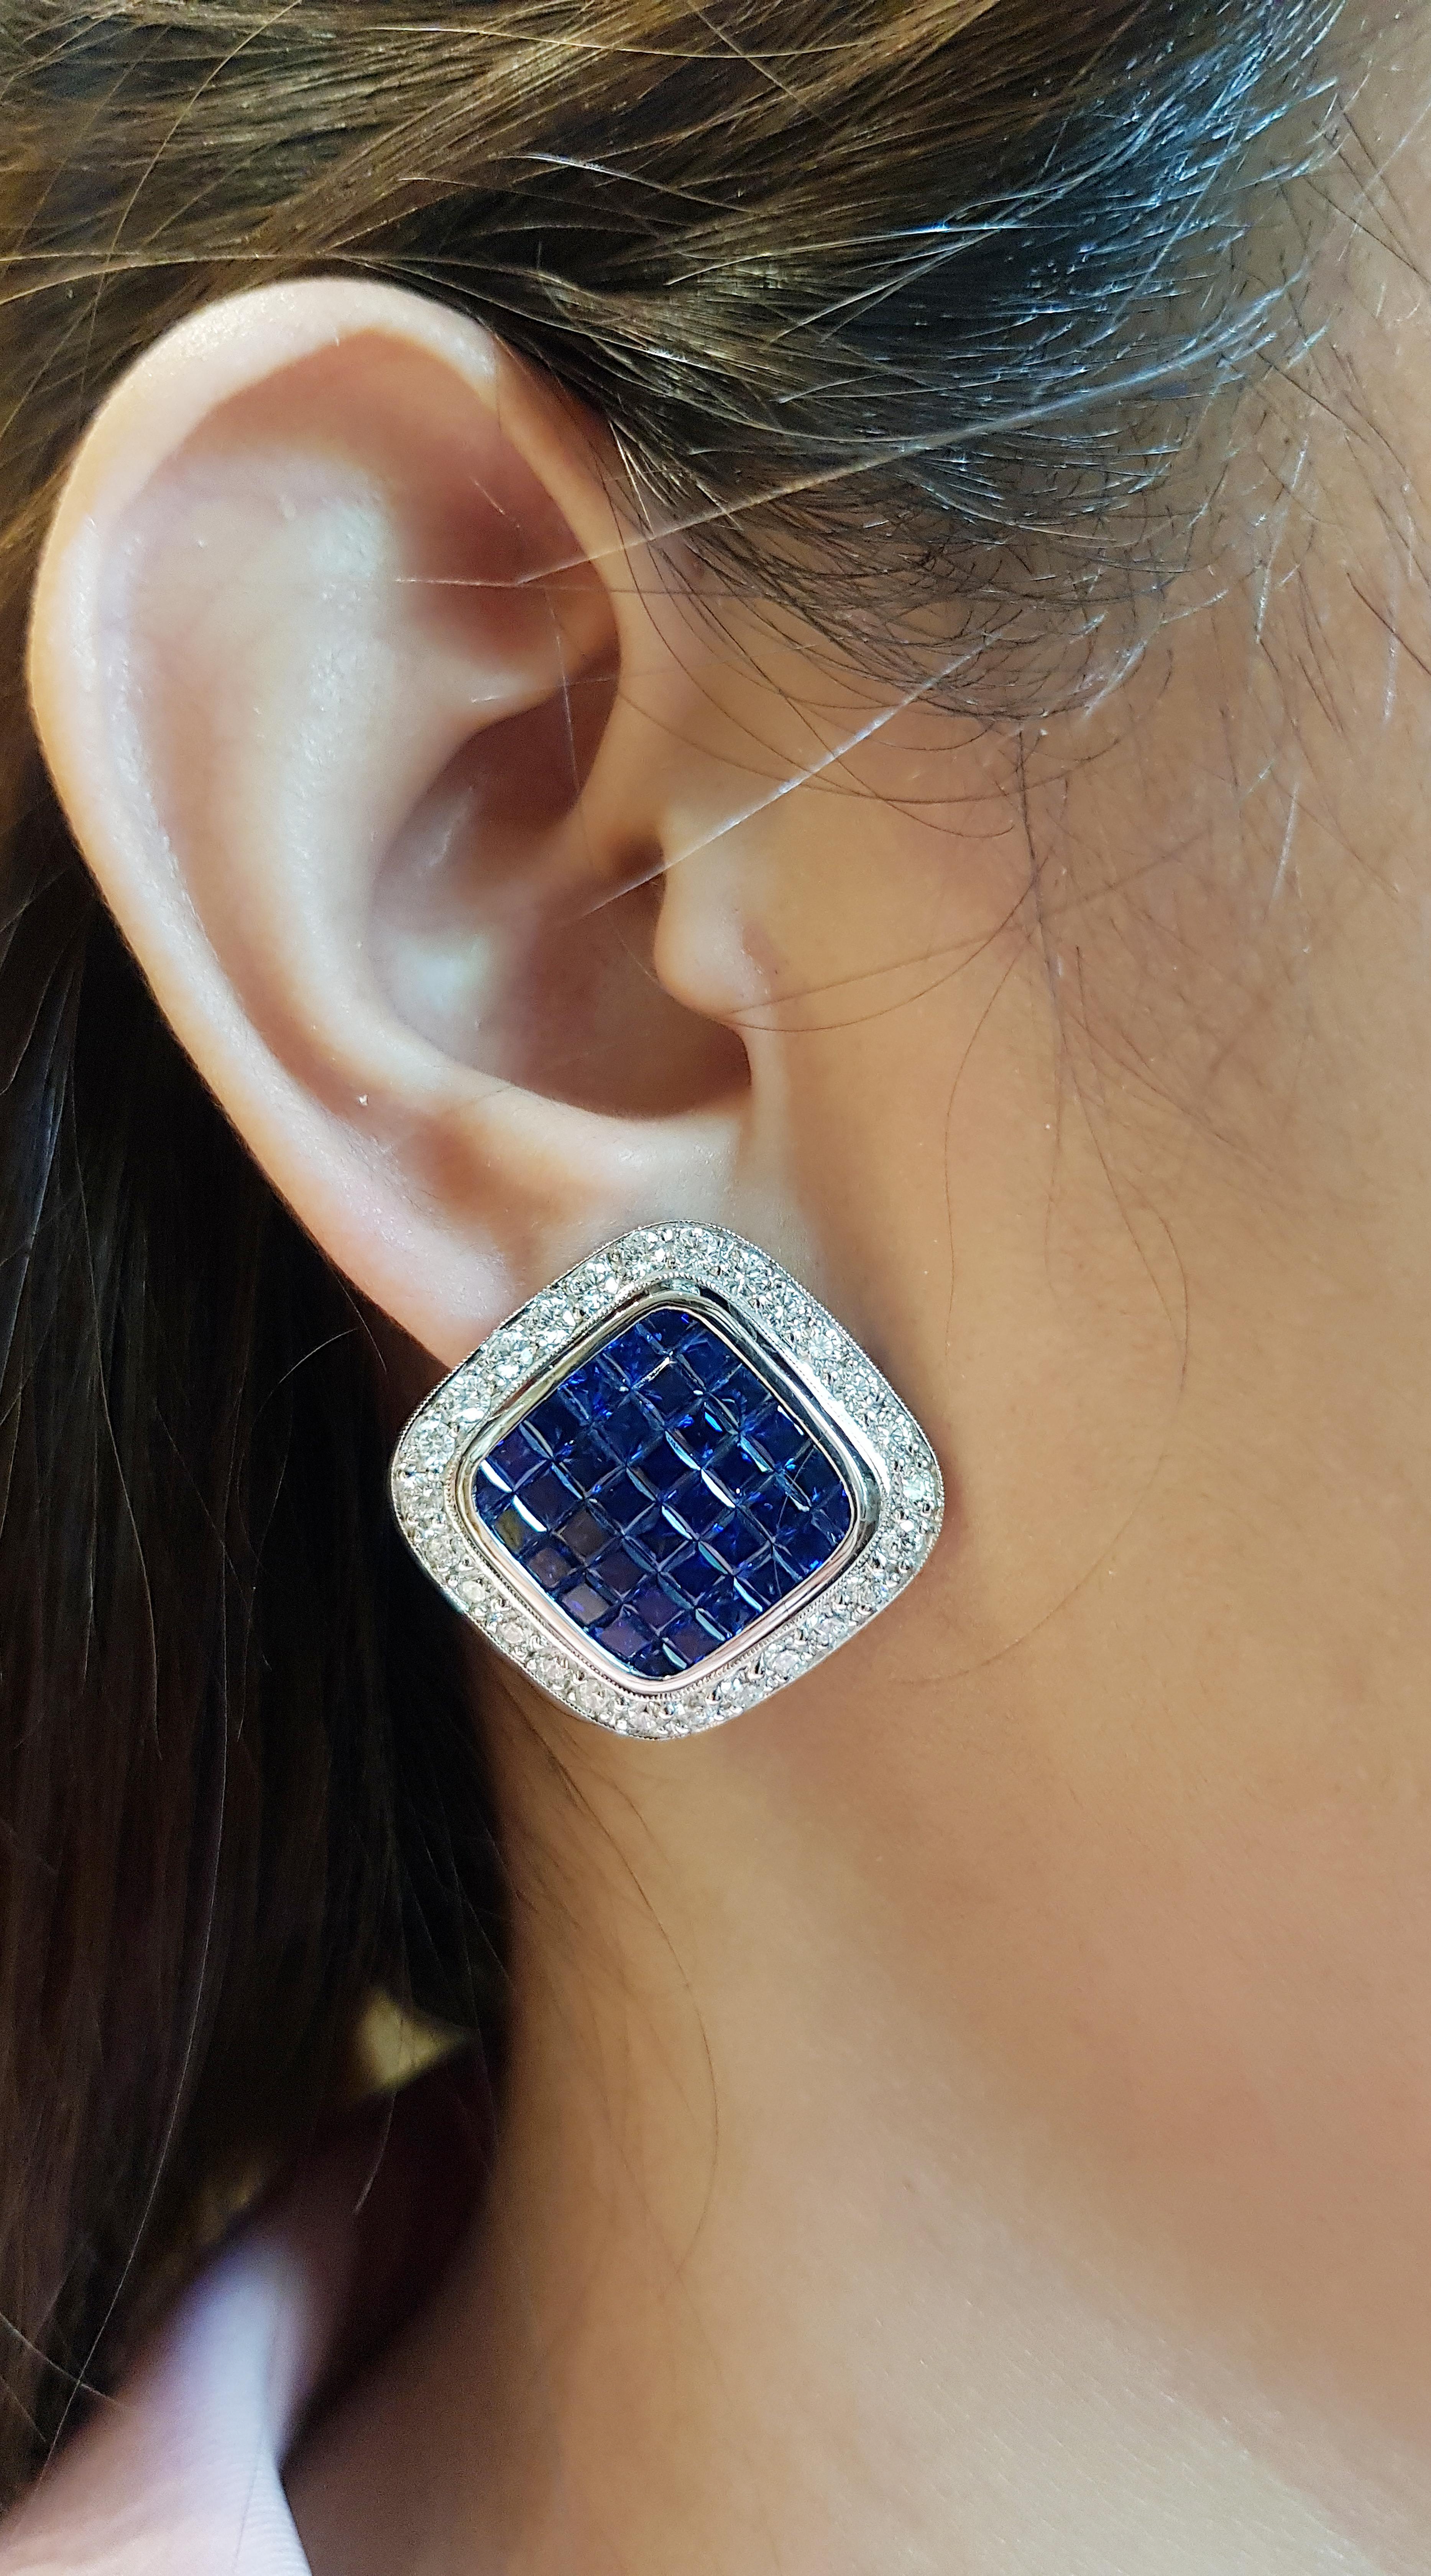 Blauer Saphir 11,07 Karat mit Diamant 2,31 Karat Ohrringe in 18 Karat Weißgold gefasst

Breite:  2.8 cm 
Länge: 2,8 cm
Gesamtgewicht: 24,66 Gramm

